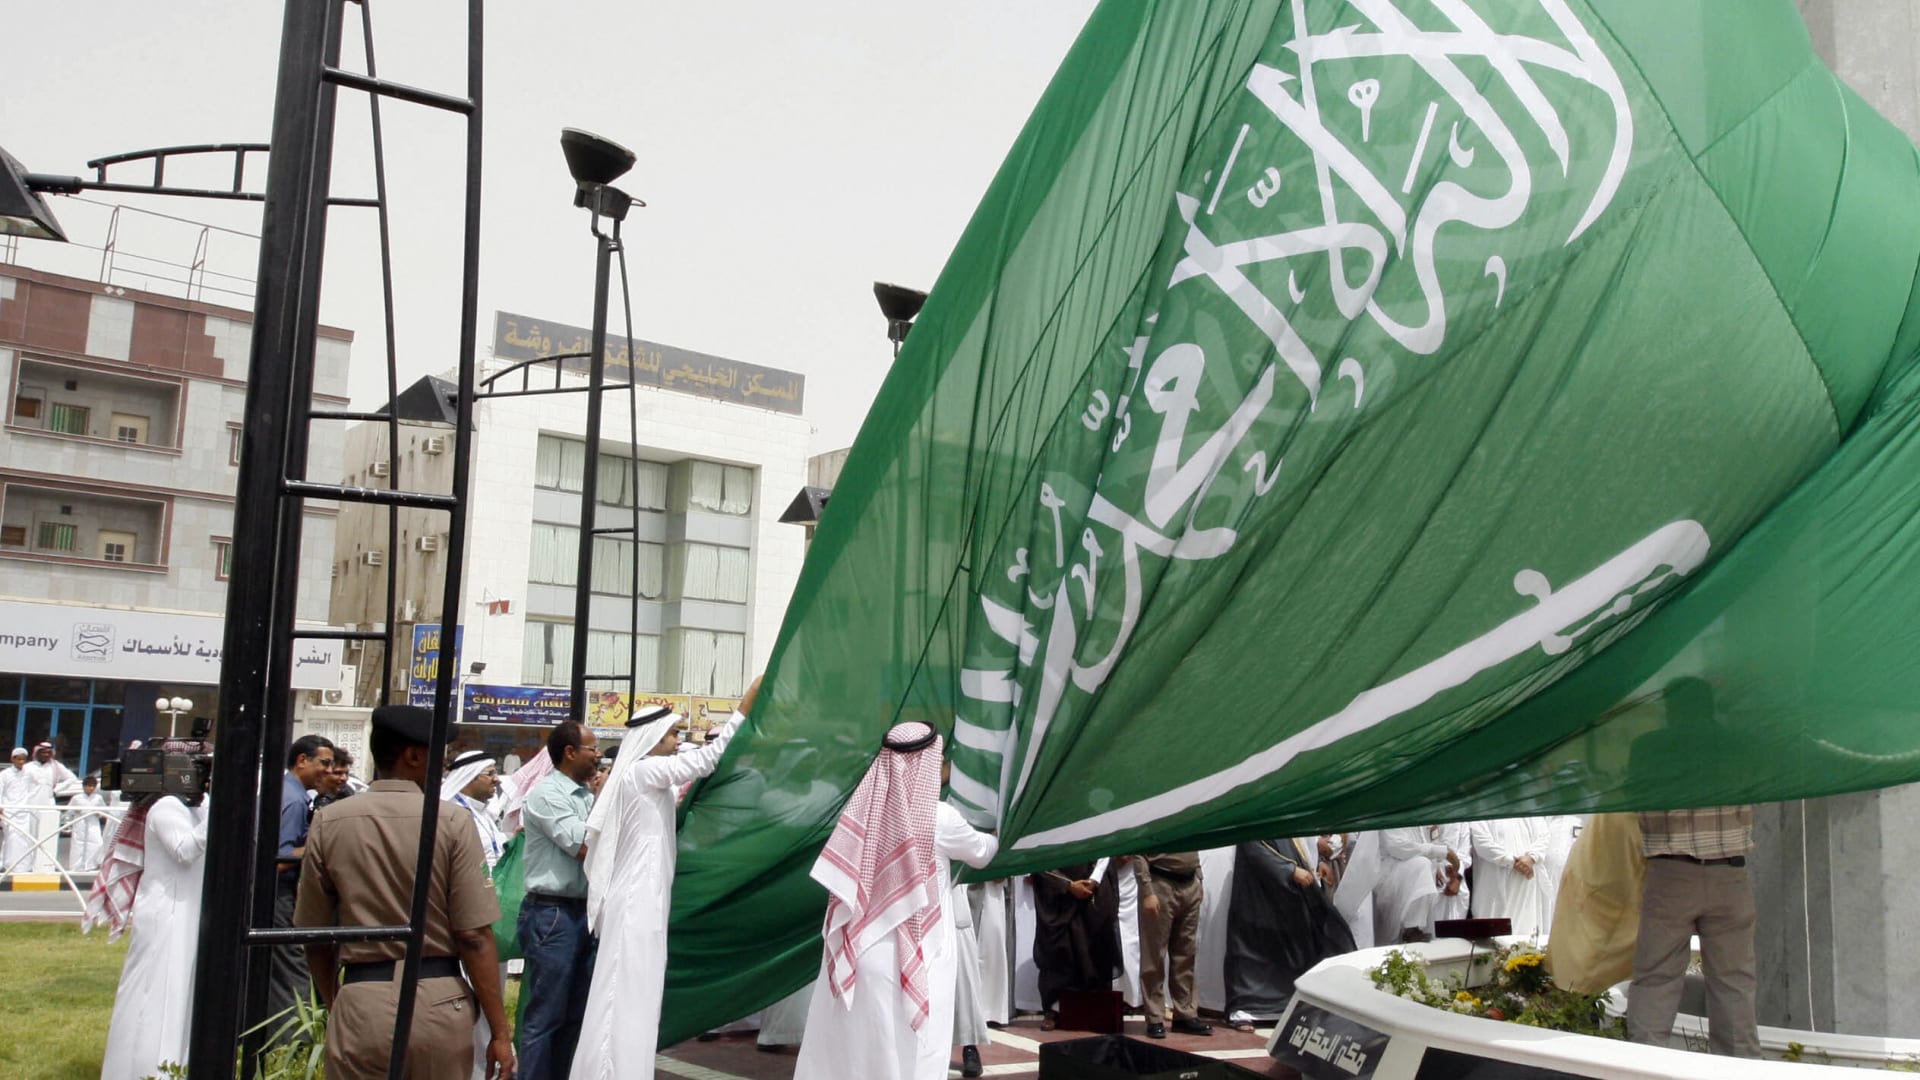 صورة ارشيفية لسعوديين يرفعون علما المملكة العام 2008